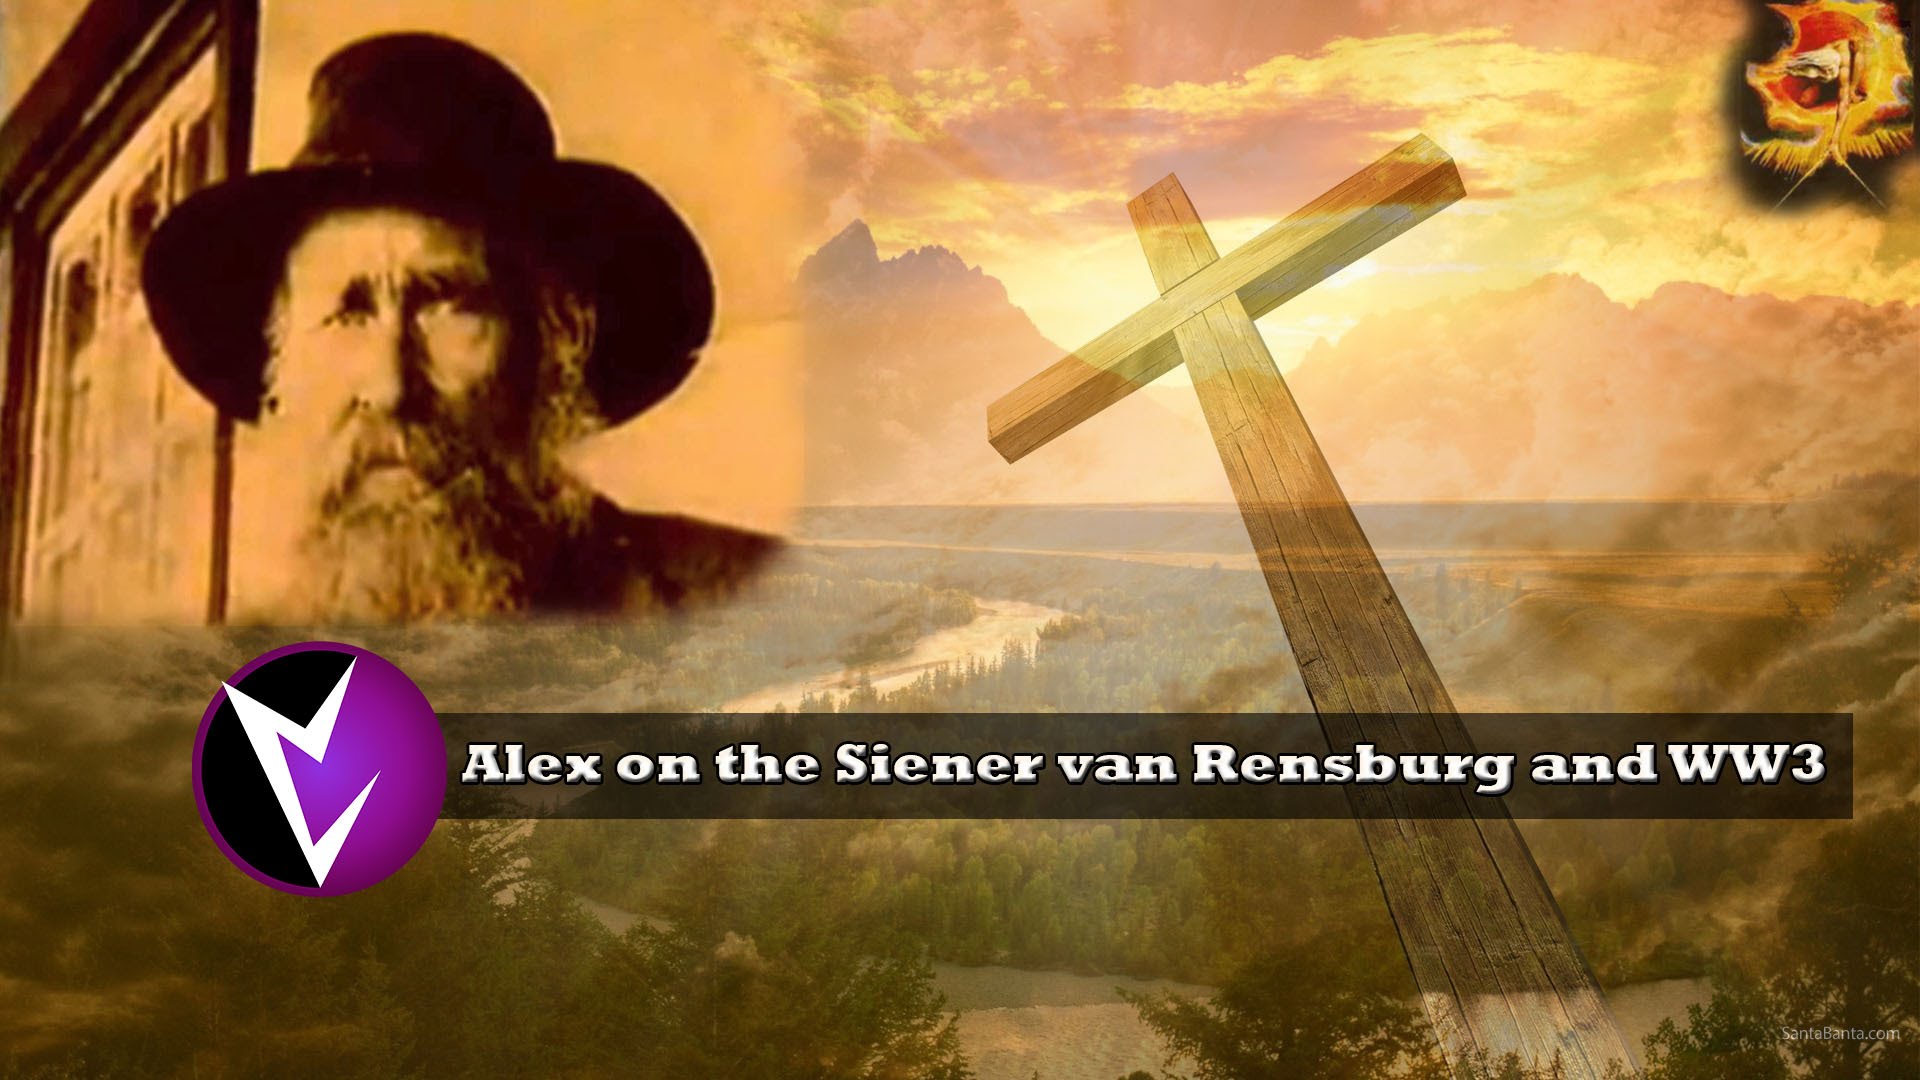 Alex on the Siener van Rensburg and World War 3